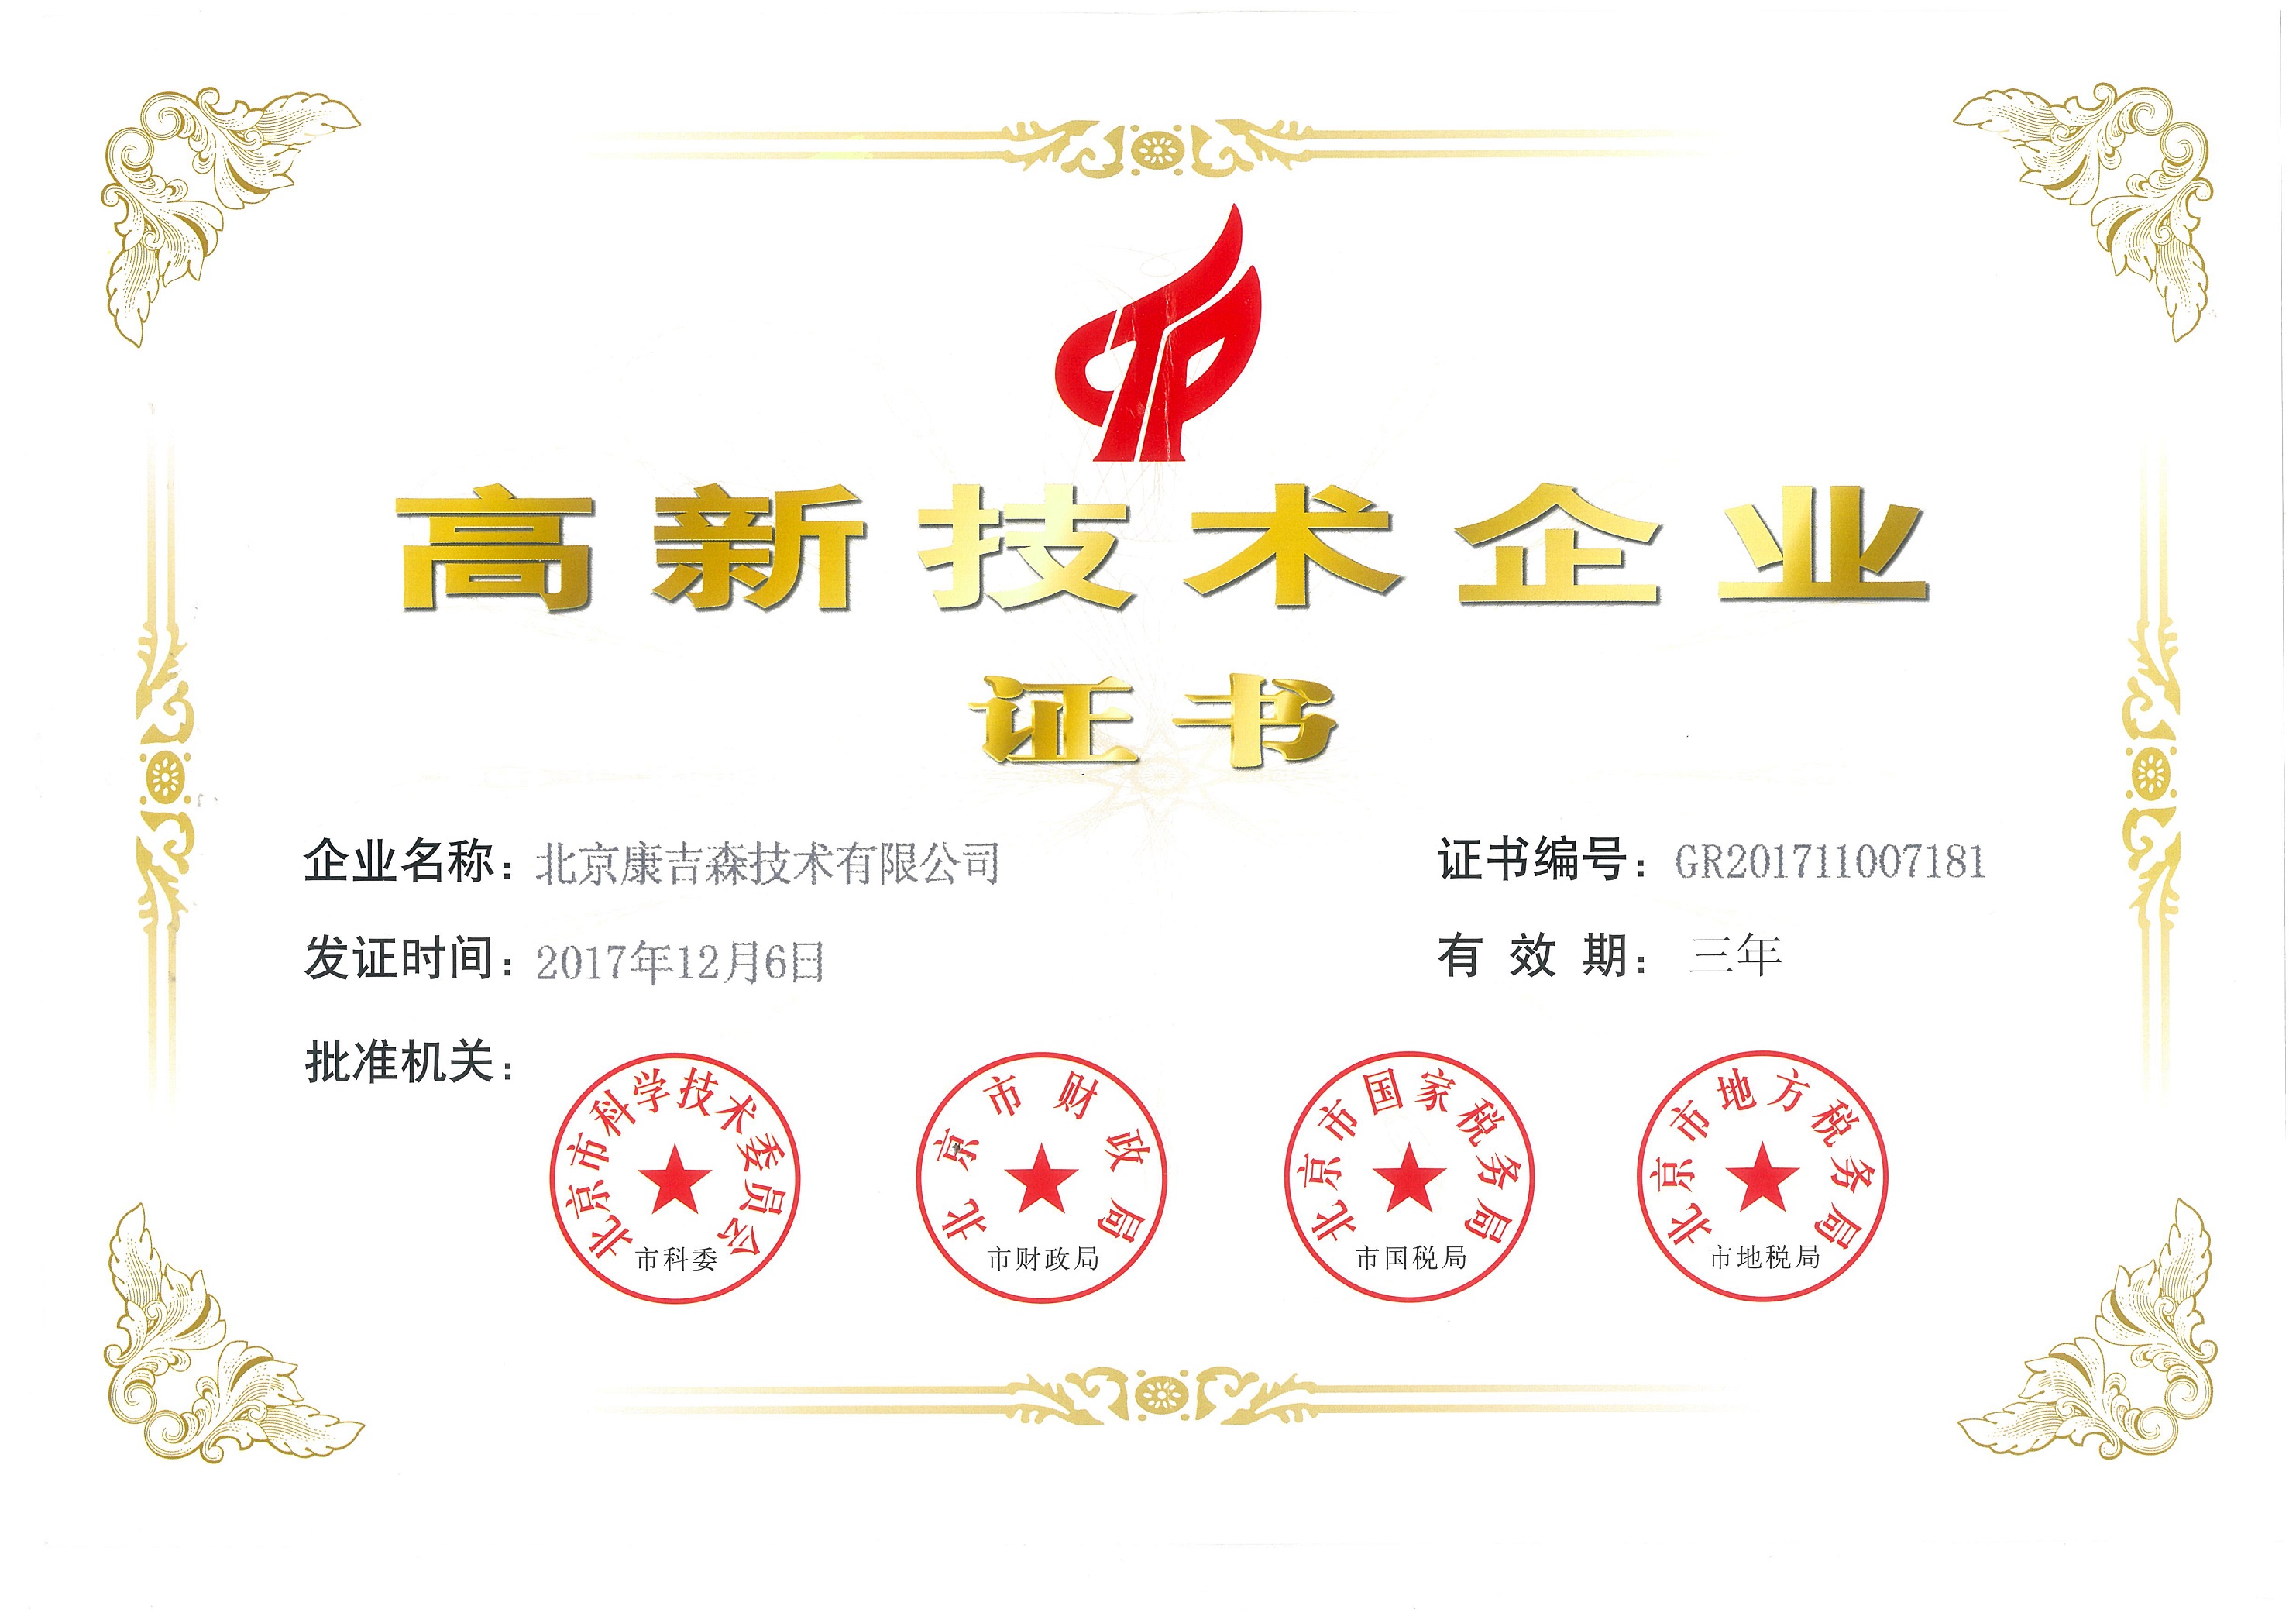 Beijing high tech enterprise certificate